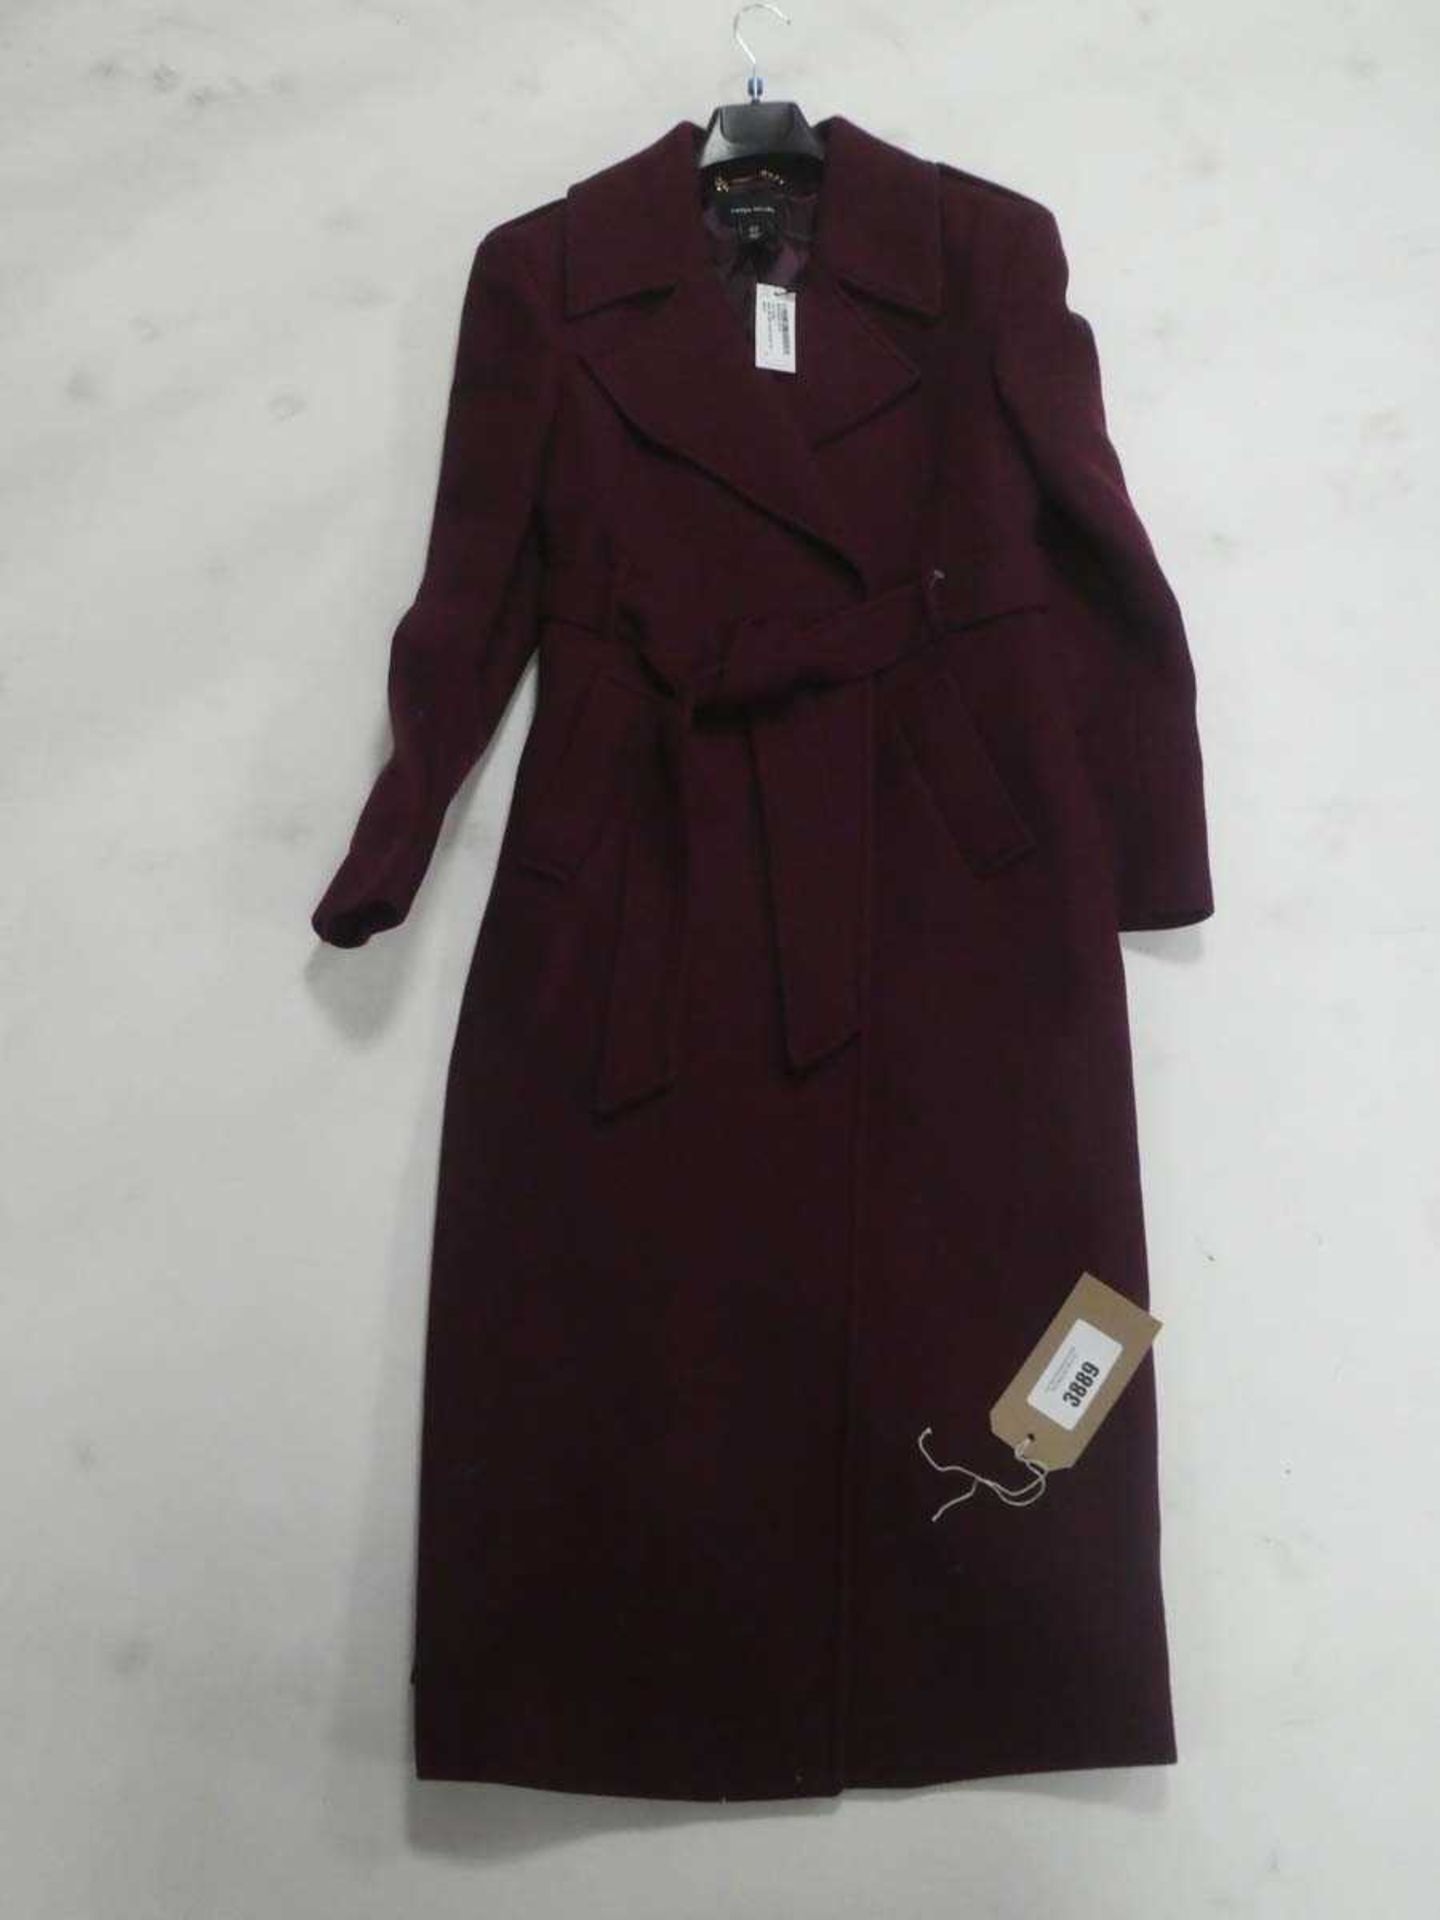 +VAT Karen Millen ladies Italian wool blend strong shoulder coat in merlot size 12 (hanging)